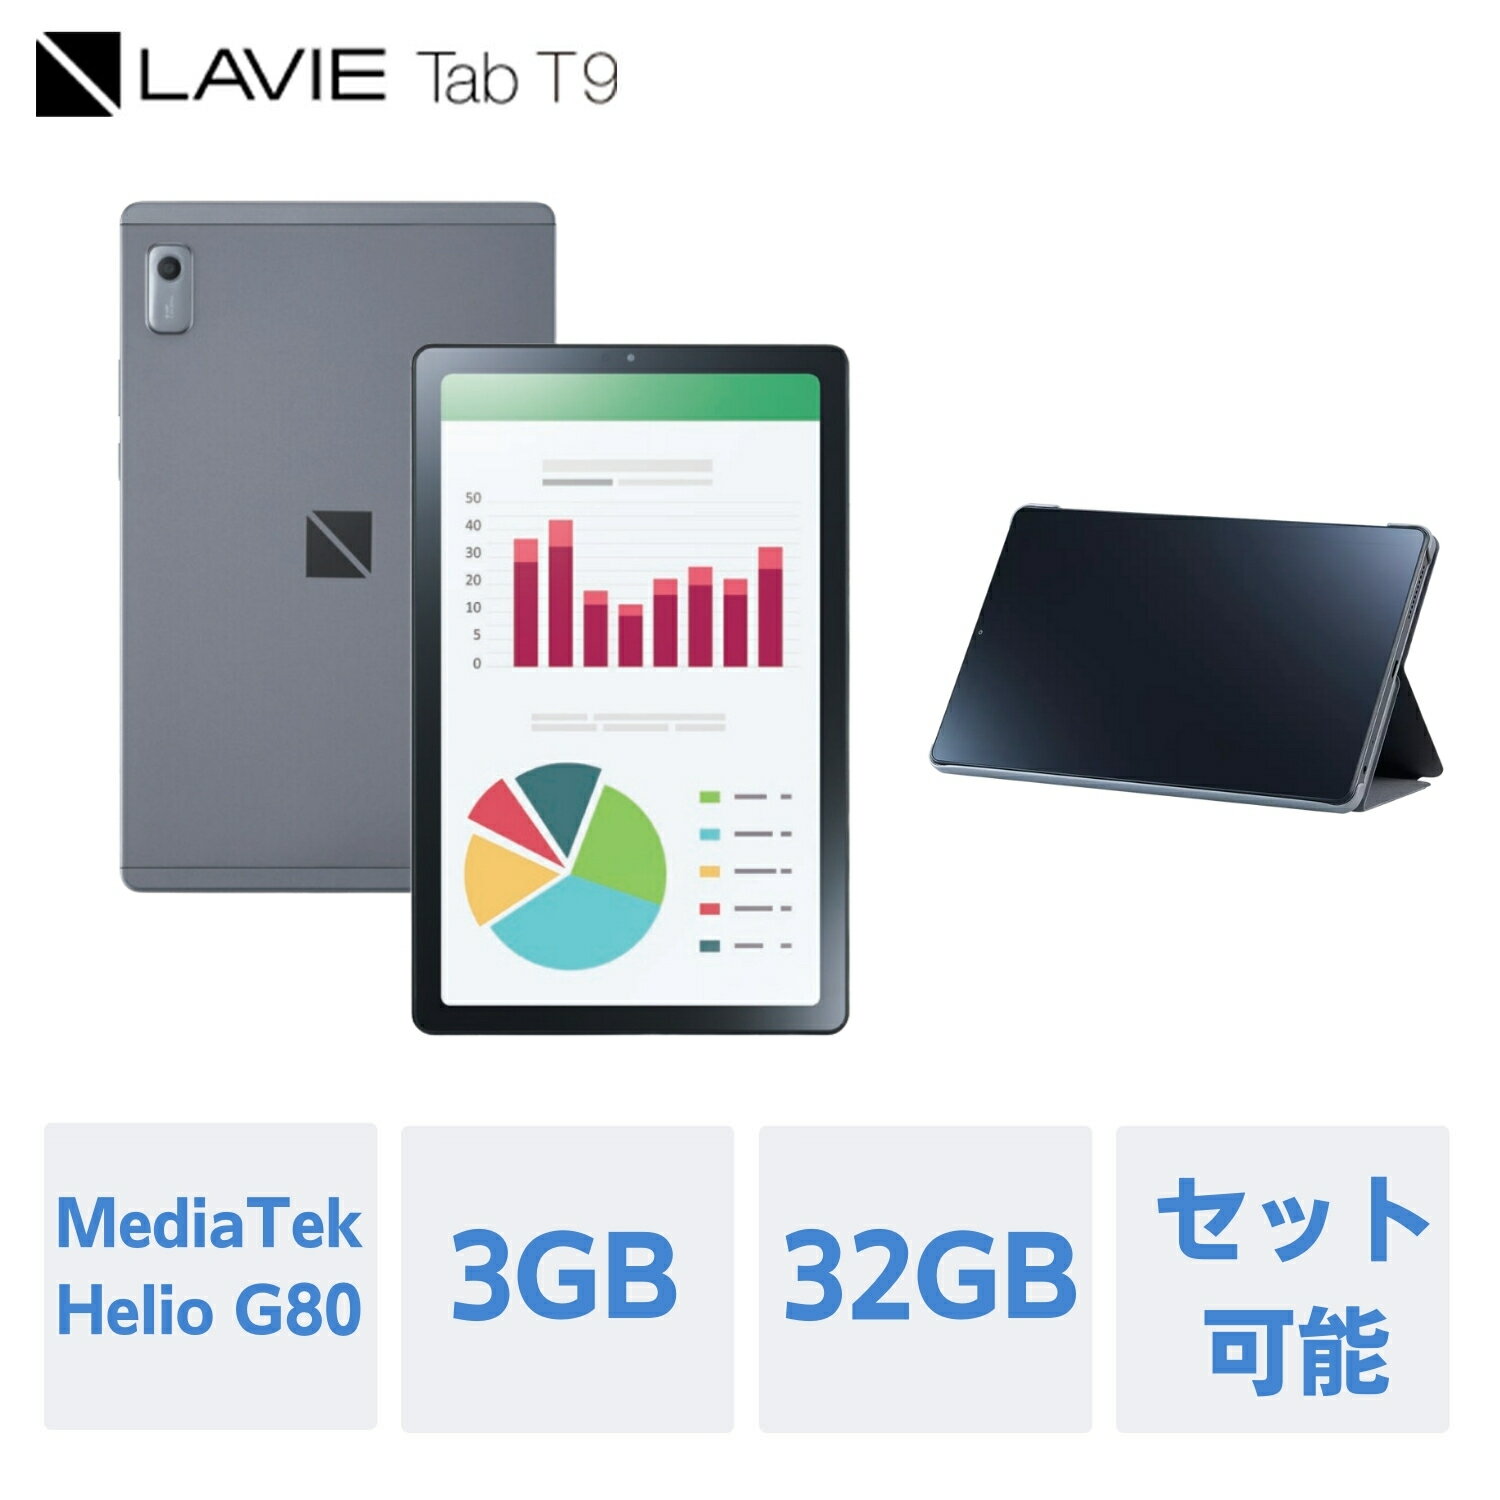 【最大P27 還元 】【公式】 NEC LAVIE 日本 メーカー タブレット Android 12 wi-fiモデル MediaTek Helio G80 9インチ 3GB 32GB PC-TAB09H02 カバーセット